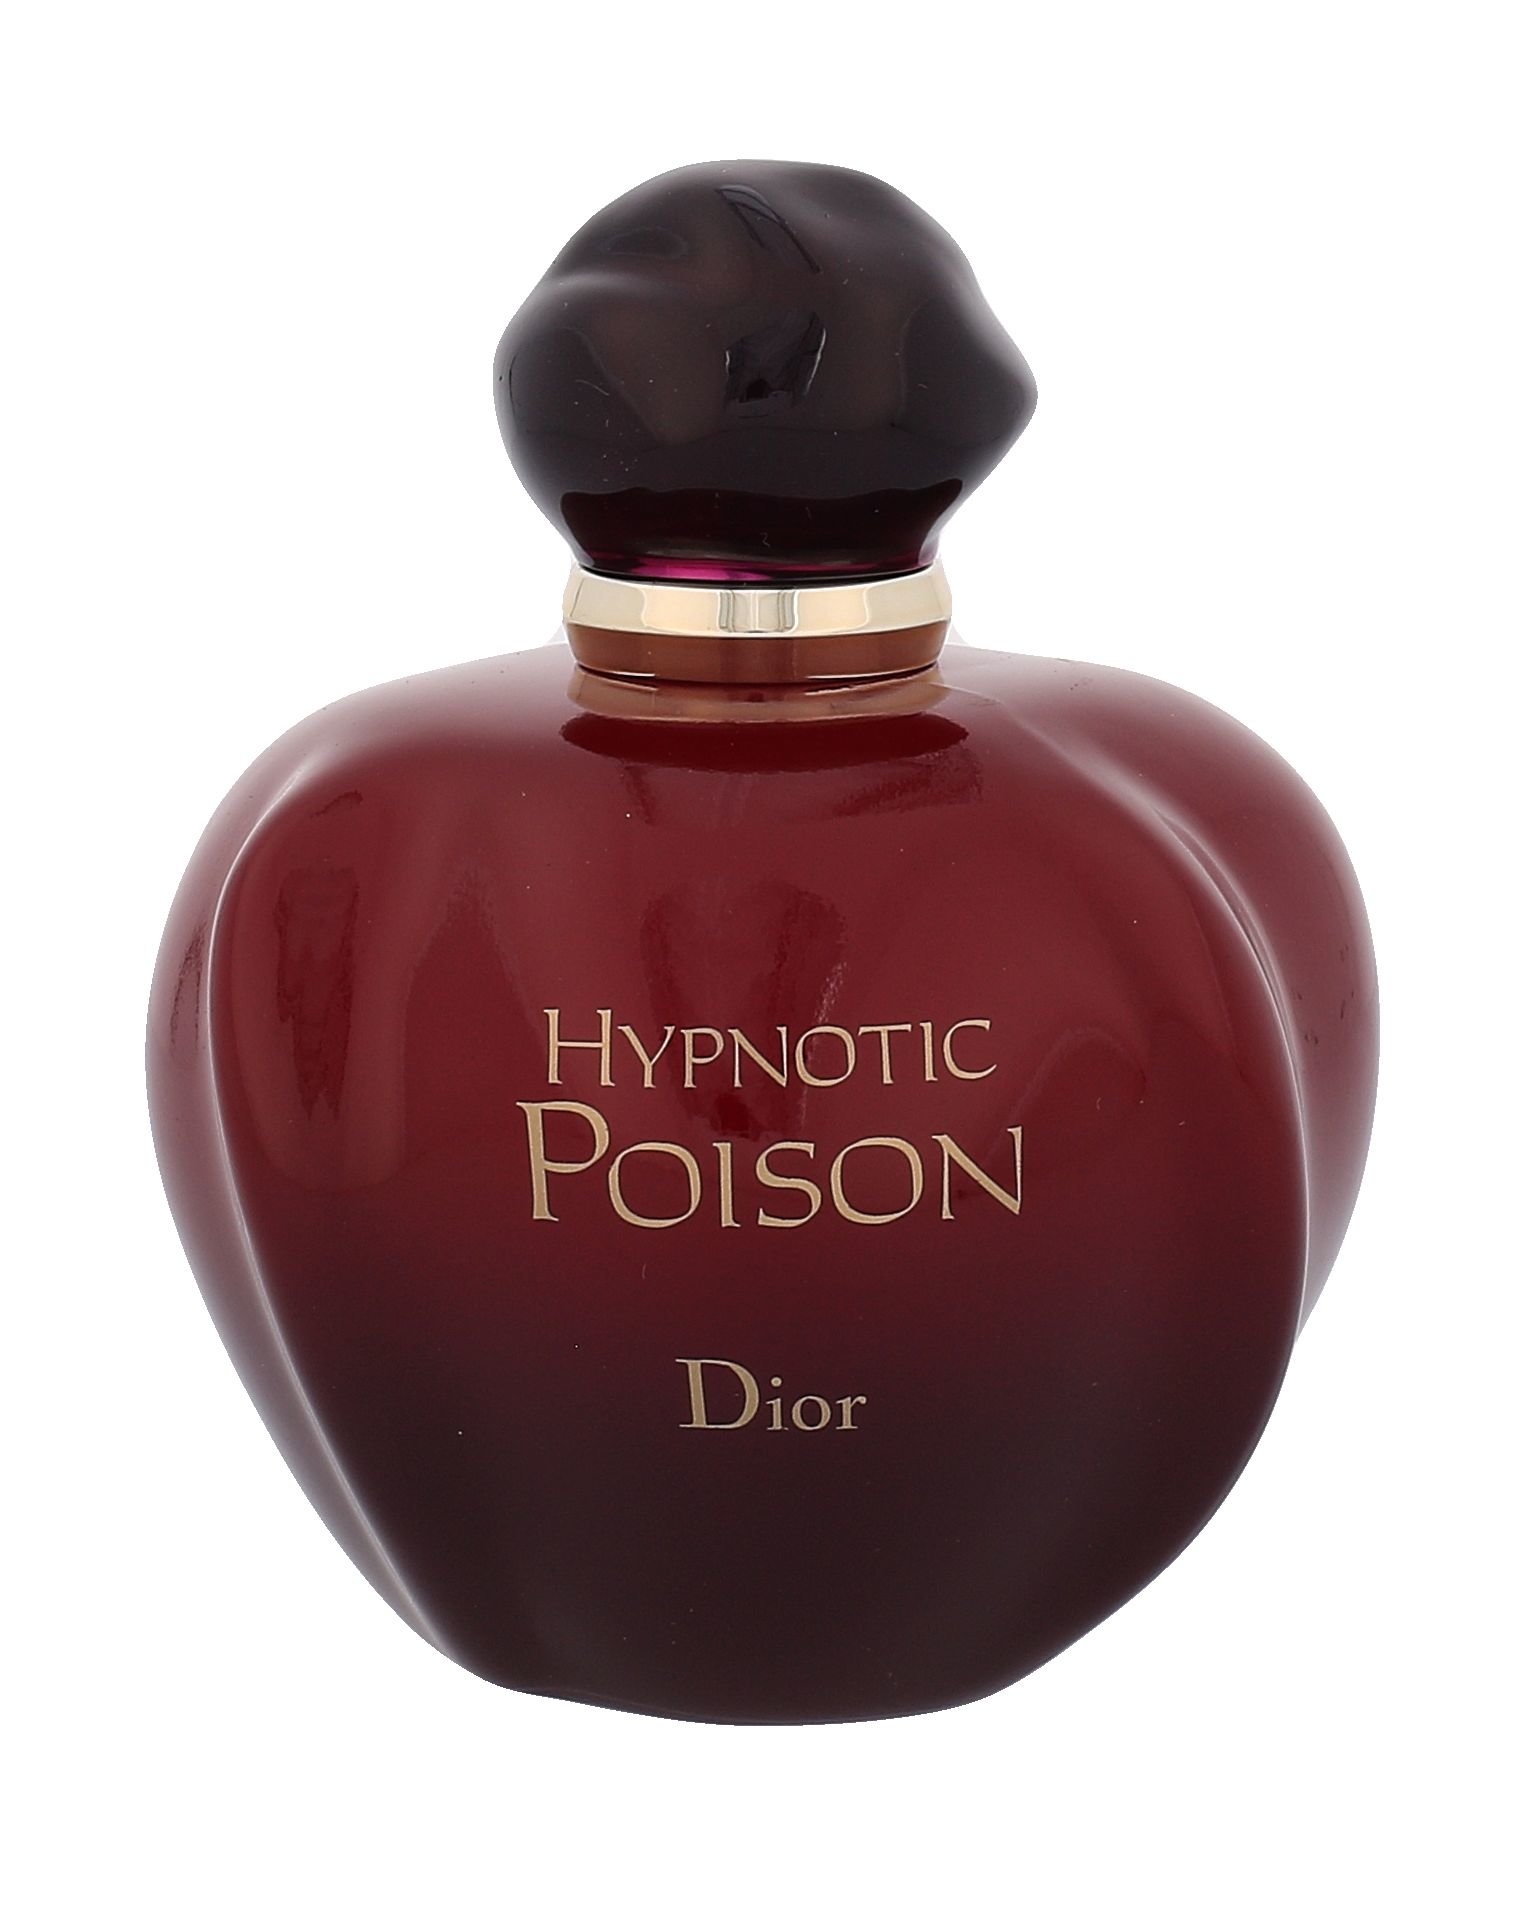 dior hypnotic poison 1998